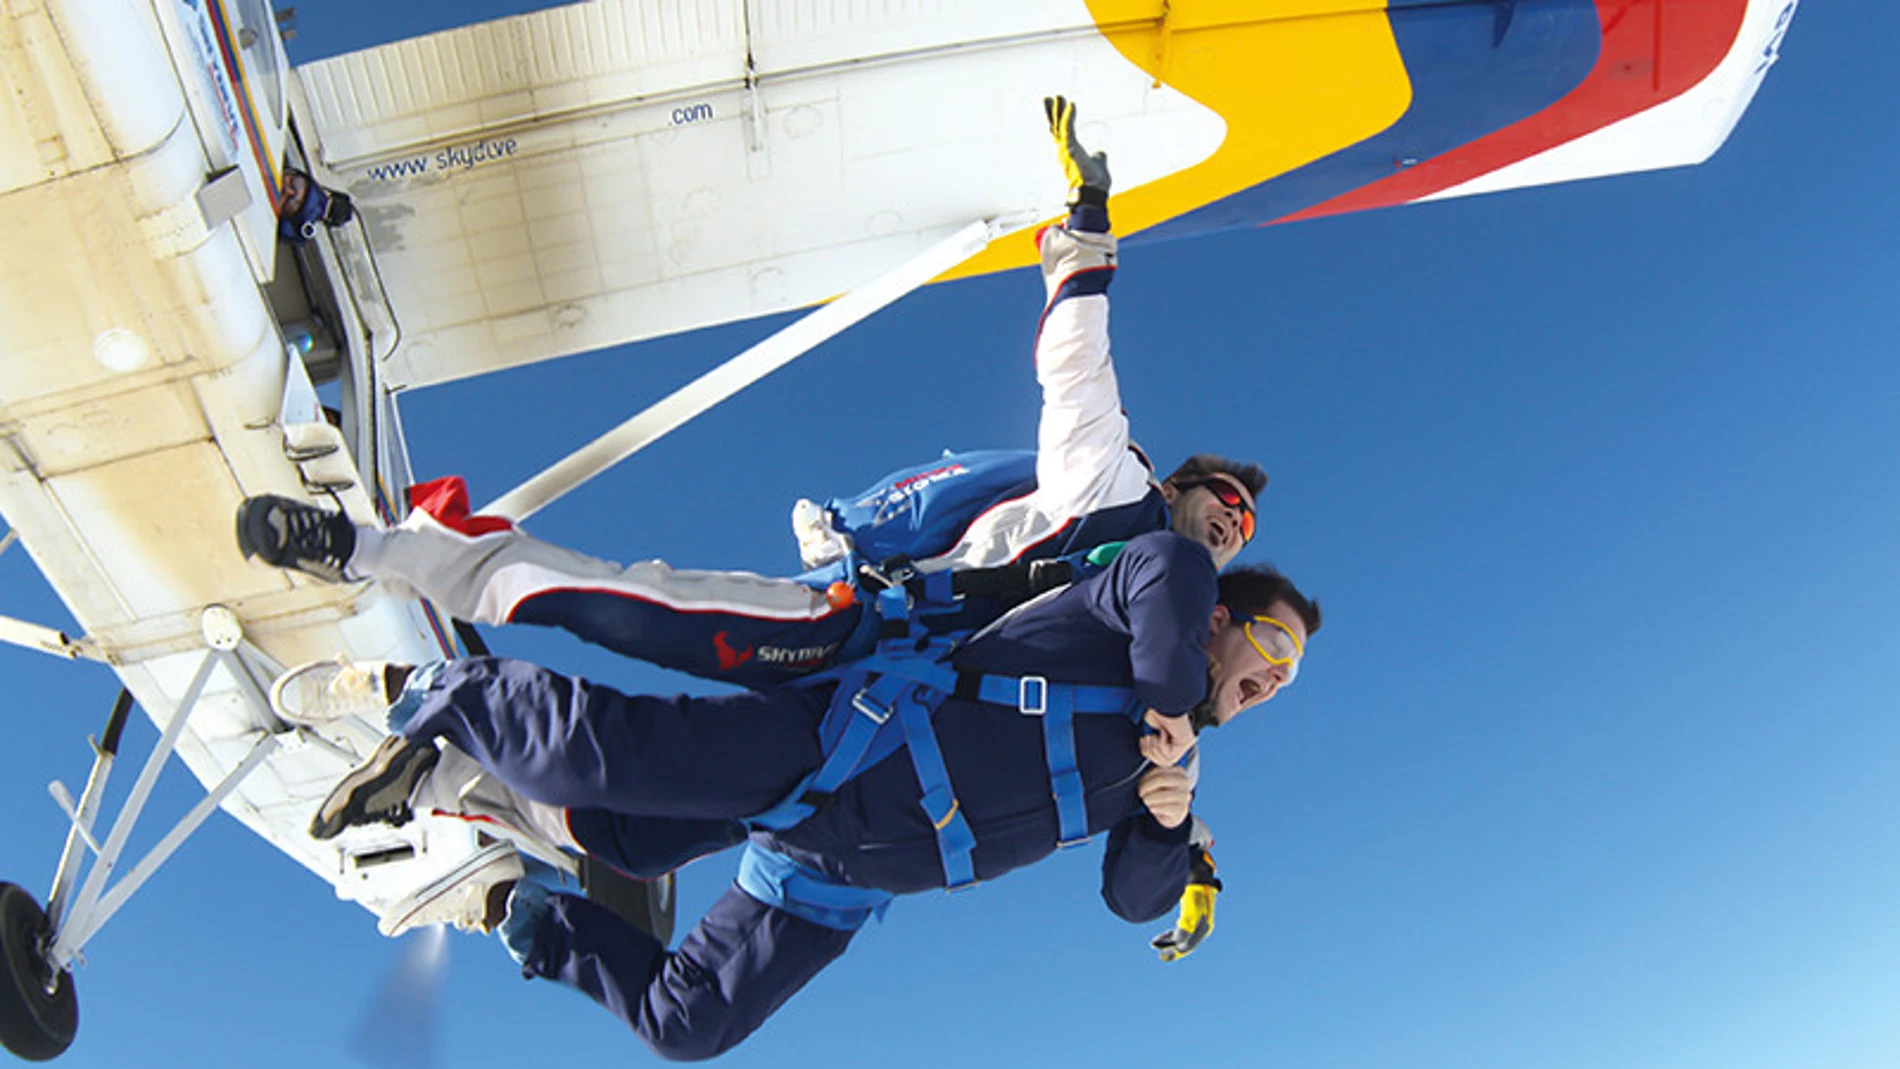 Una de las cajas de experiencias con más éxito es el salto en paracaídas